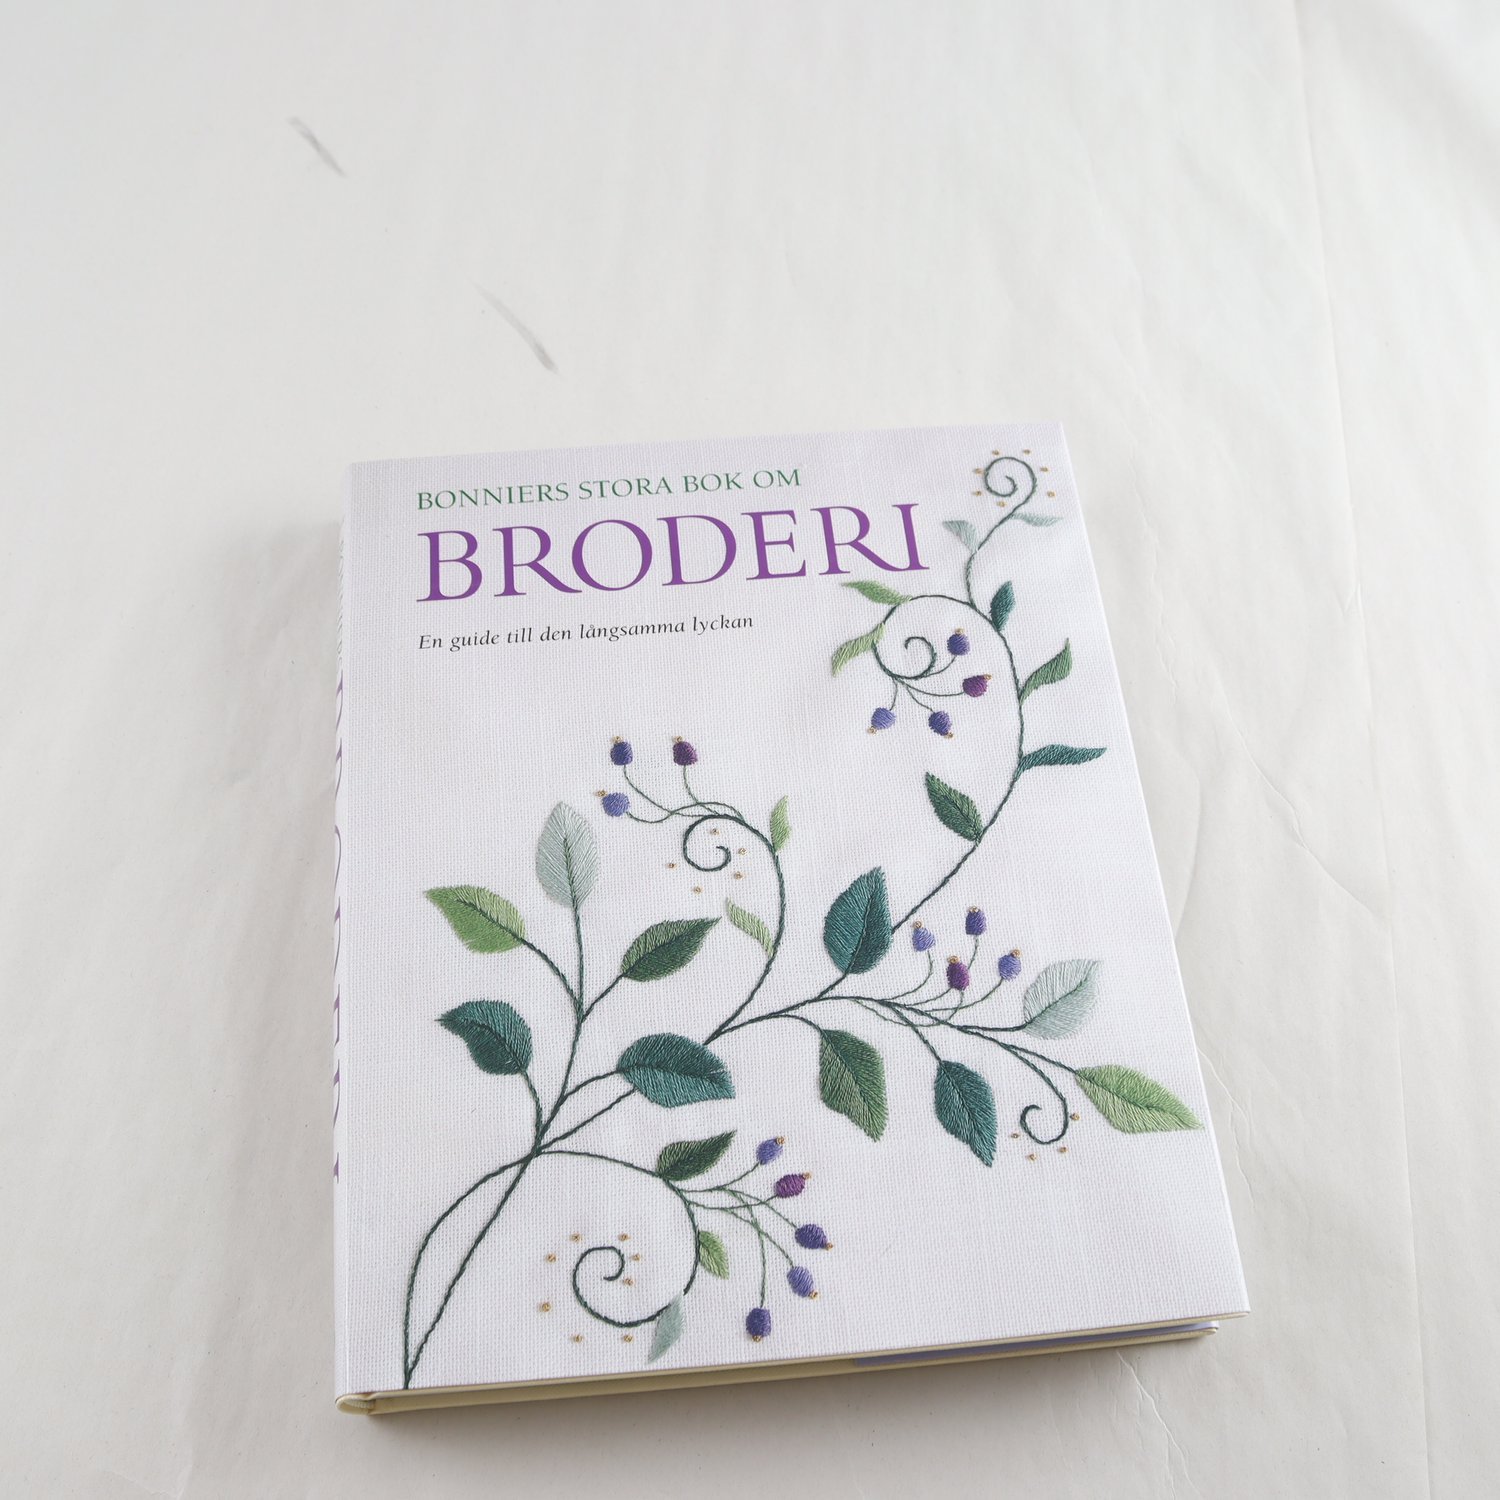 Bonniers stora bok om broderi: En guide till den långsamma lyckan